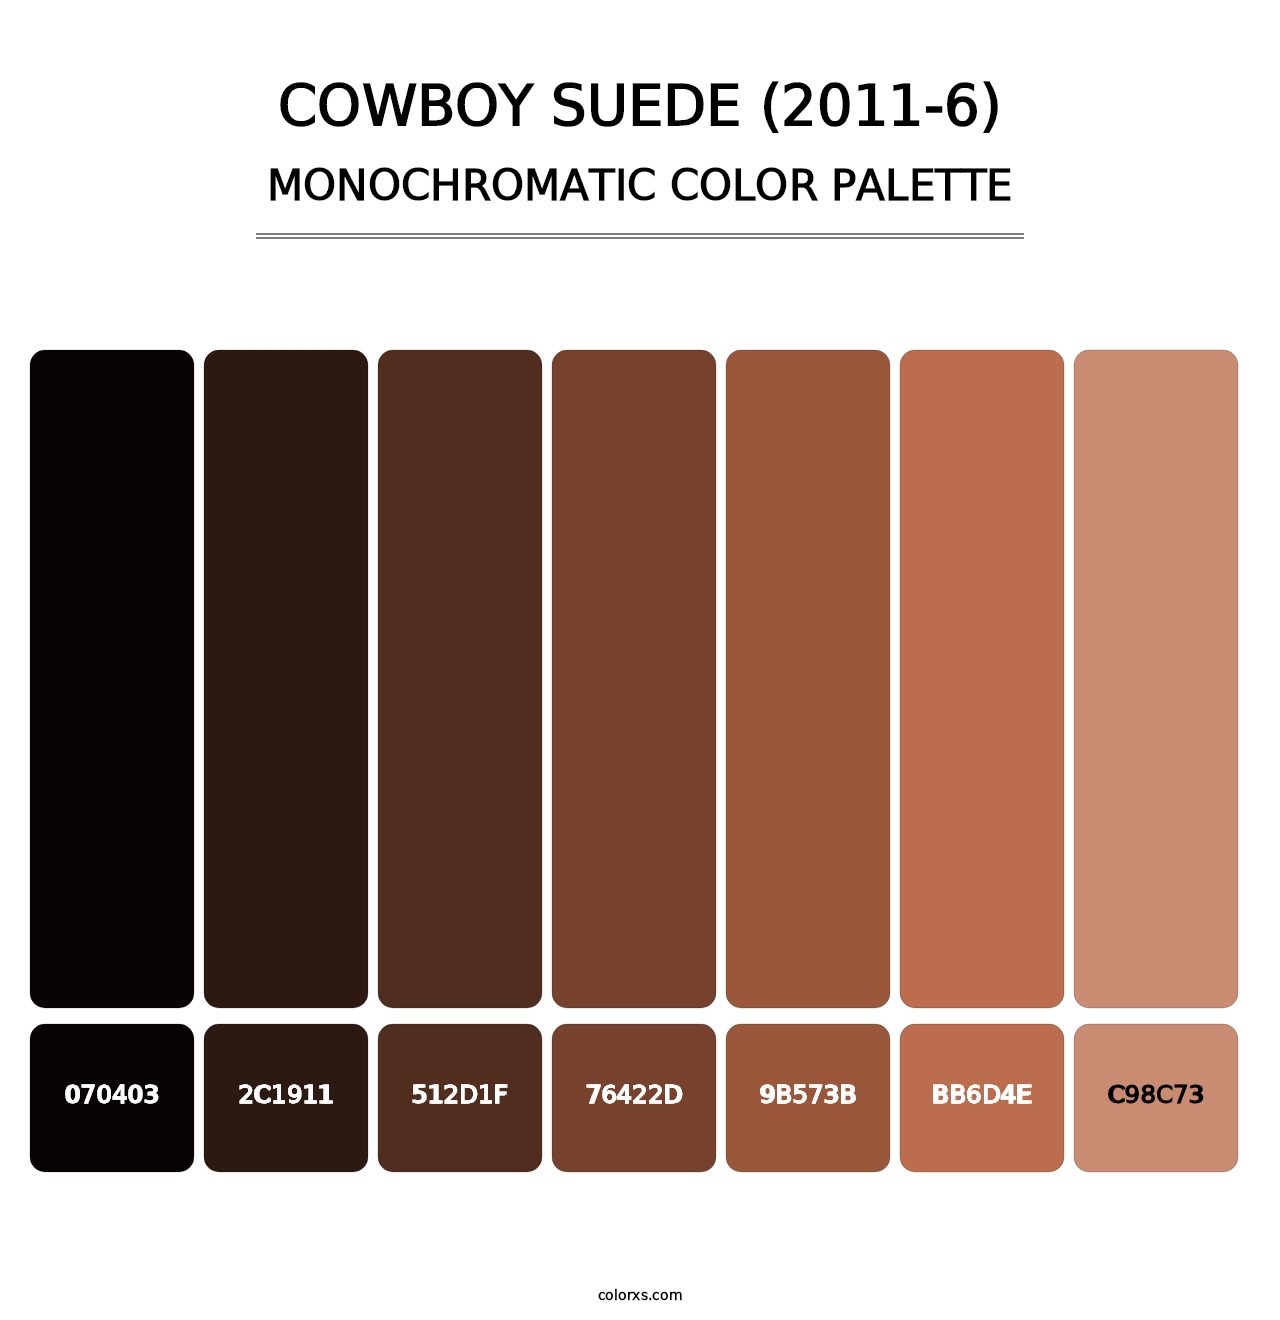 Cowboy Suede (2011-6) - Monochromatic Color Palette